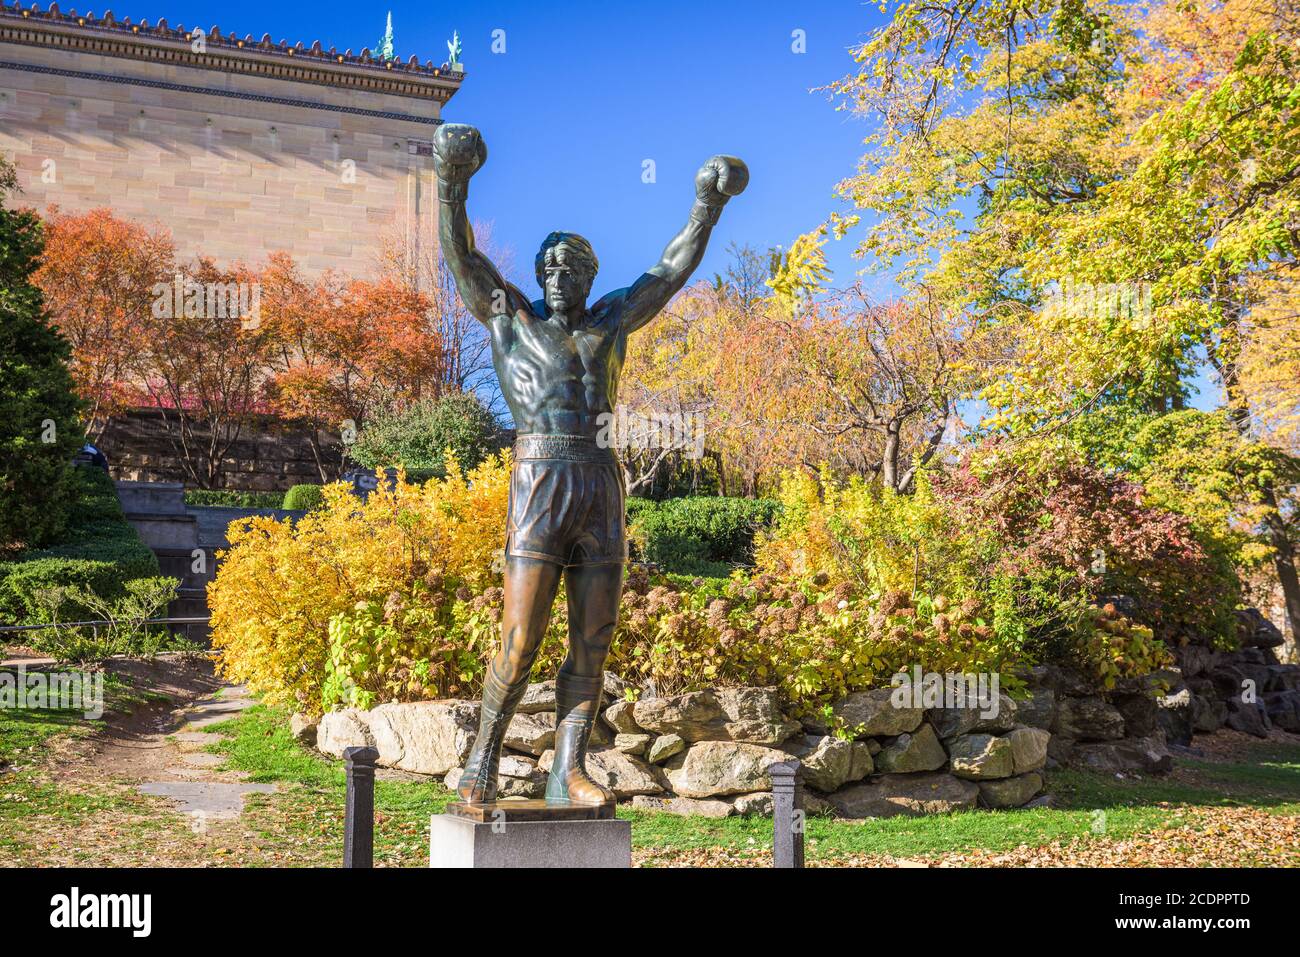 PHILADELPHIA, PENNSYLVANIA - NOVEMBR 16, 2016: La statua di Rocky Balboa durante l'autunno. La statua commemora la serie di film Rocky che ha beco Foto Stock